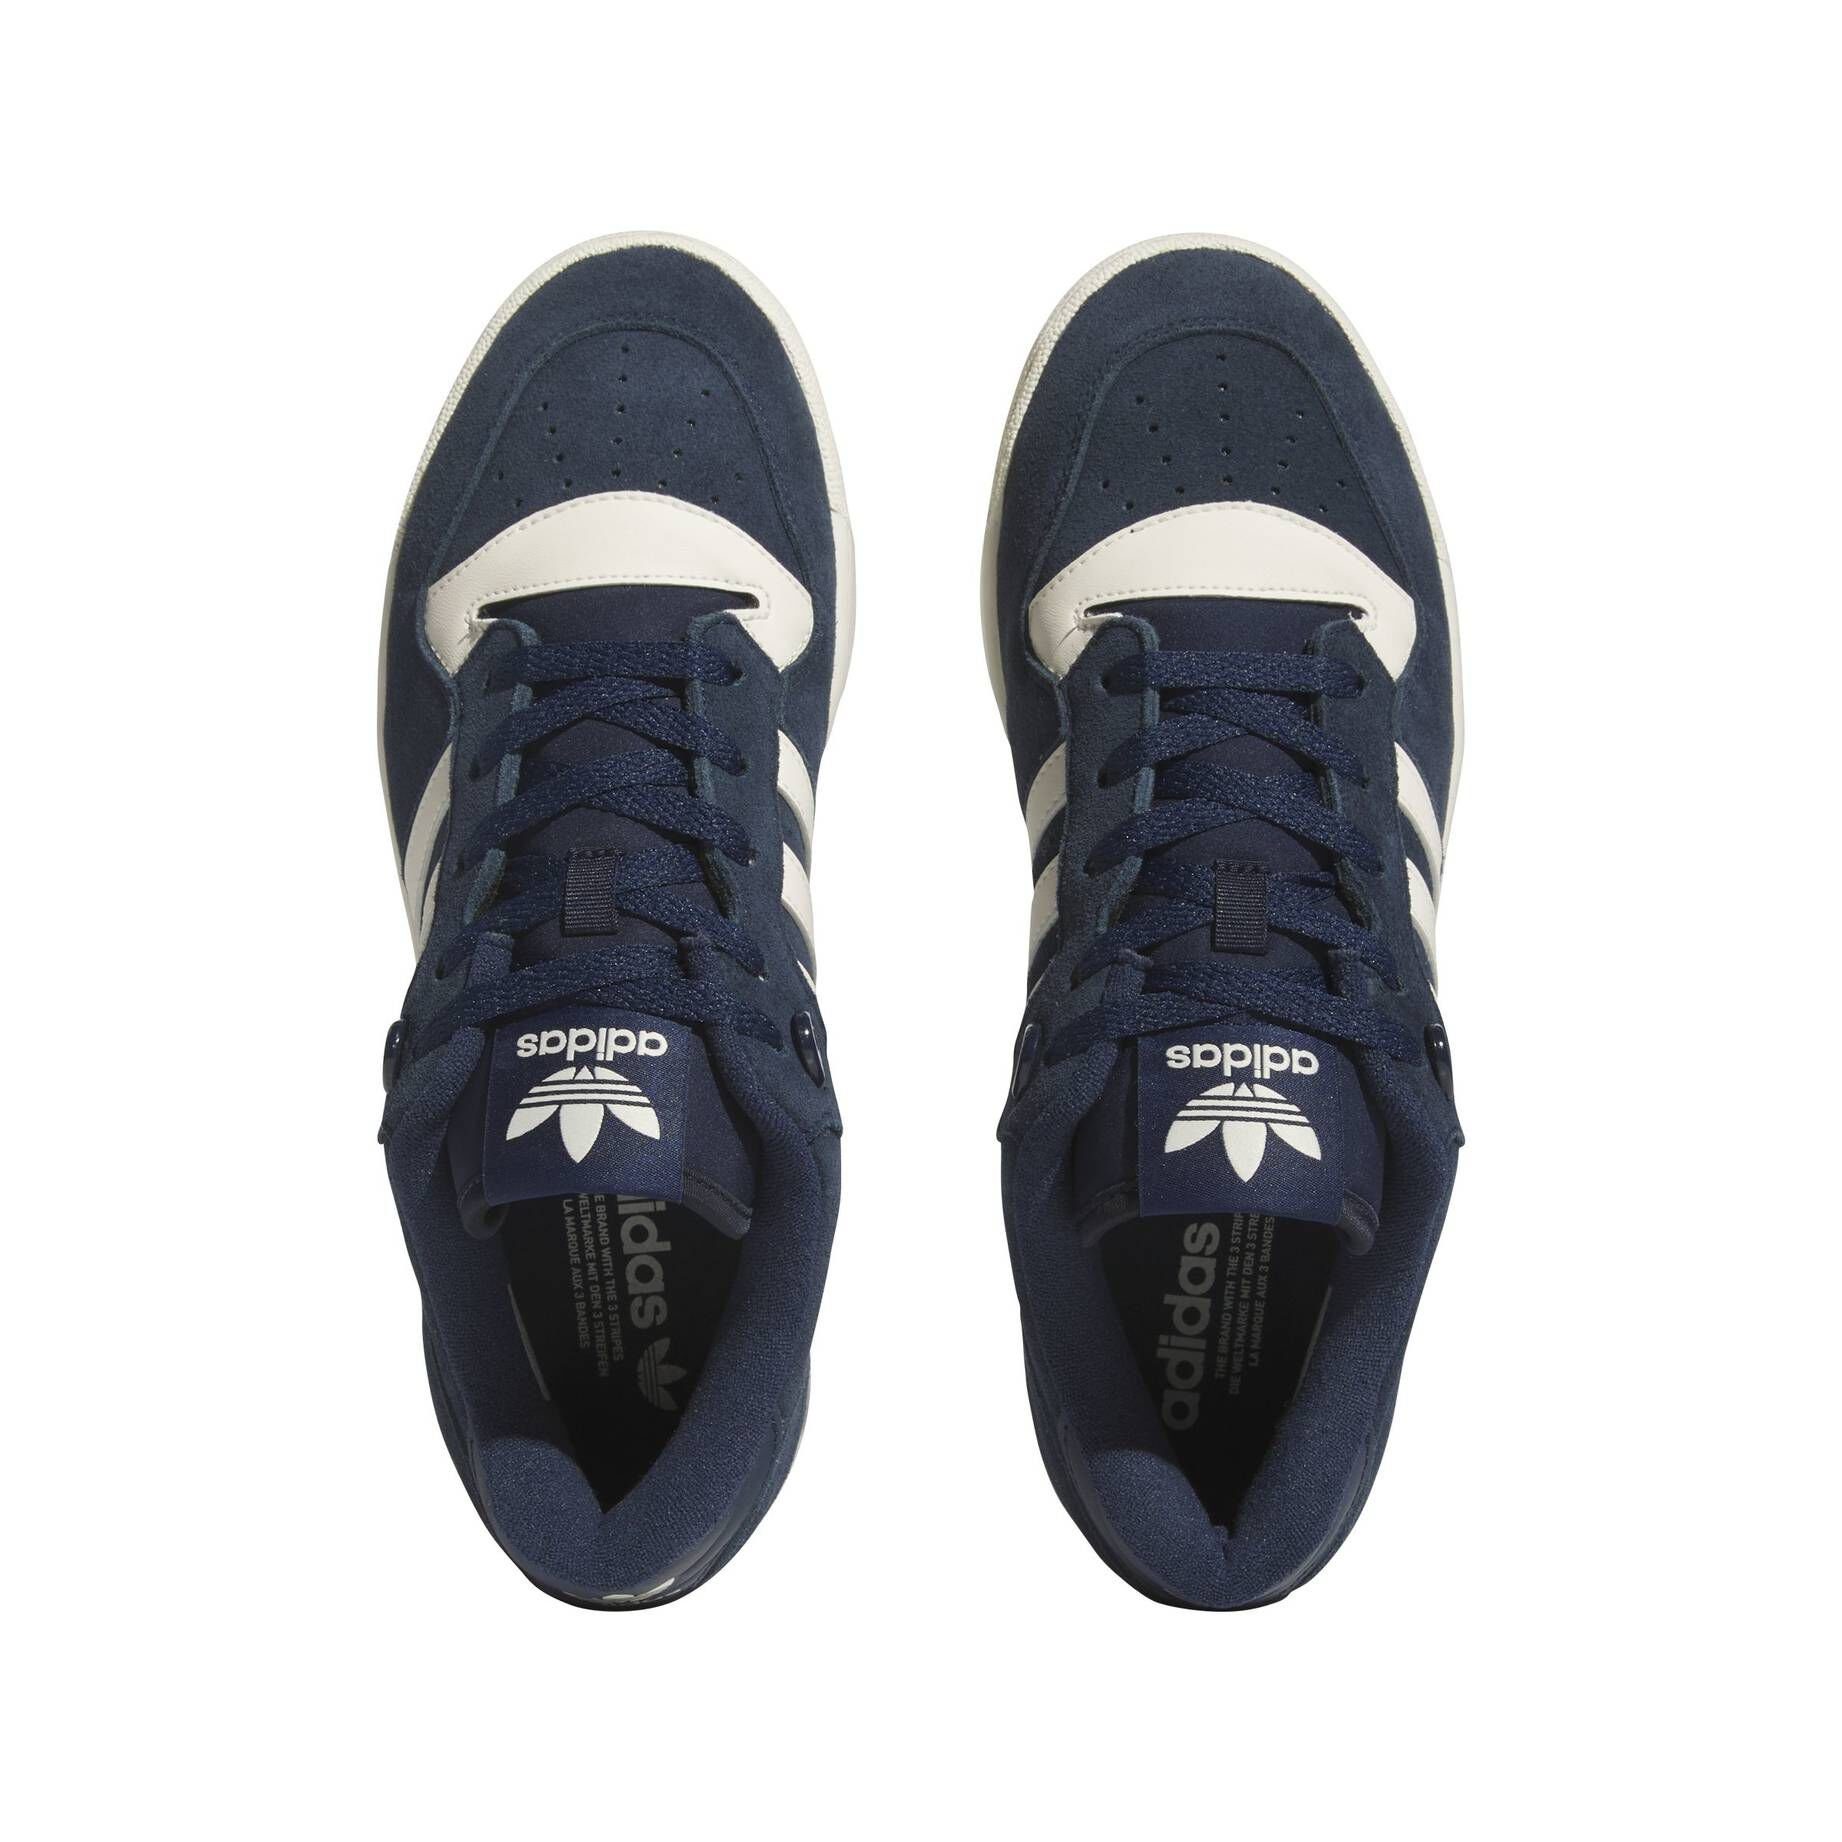 RIVALRY Herren Halbschuhe Originals adidas Sneaker